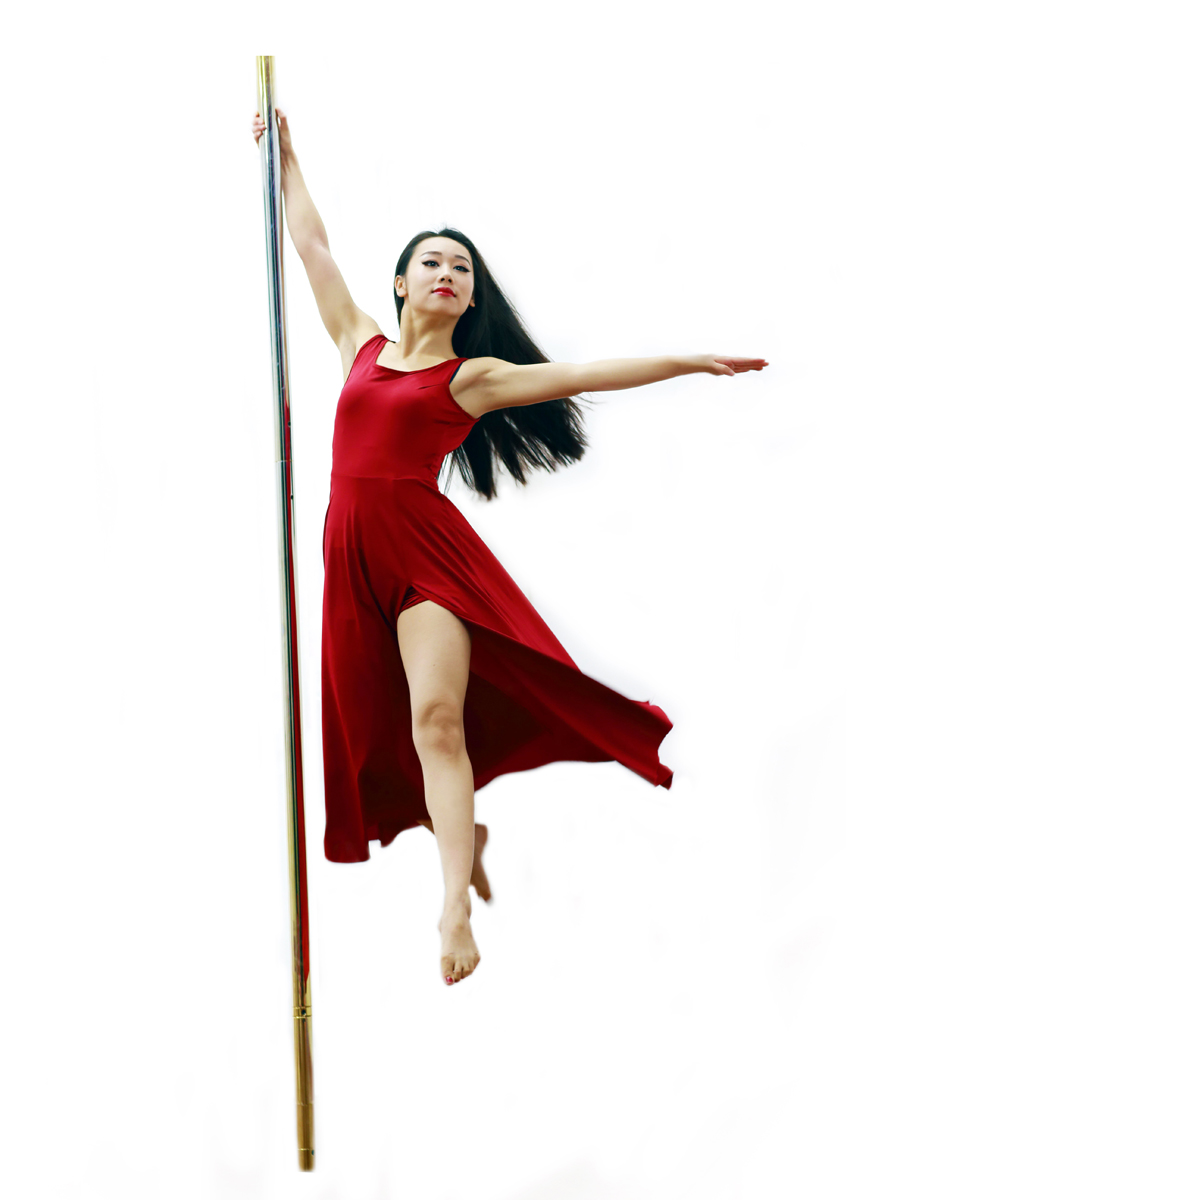 【Natalia T】2016世界钢管舞大赛 女子冠军_三次元舞蹈_舞蹈_bilibili_哔哩哔哩